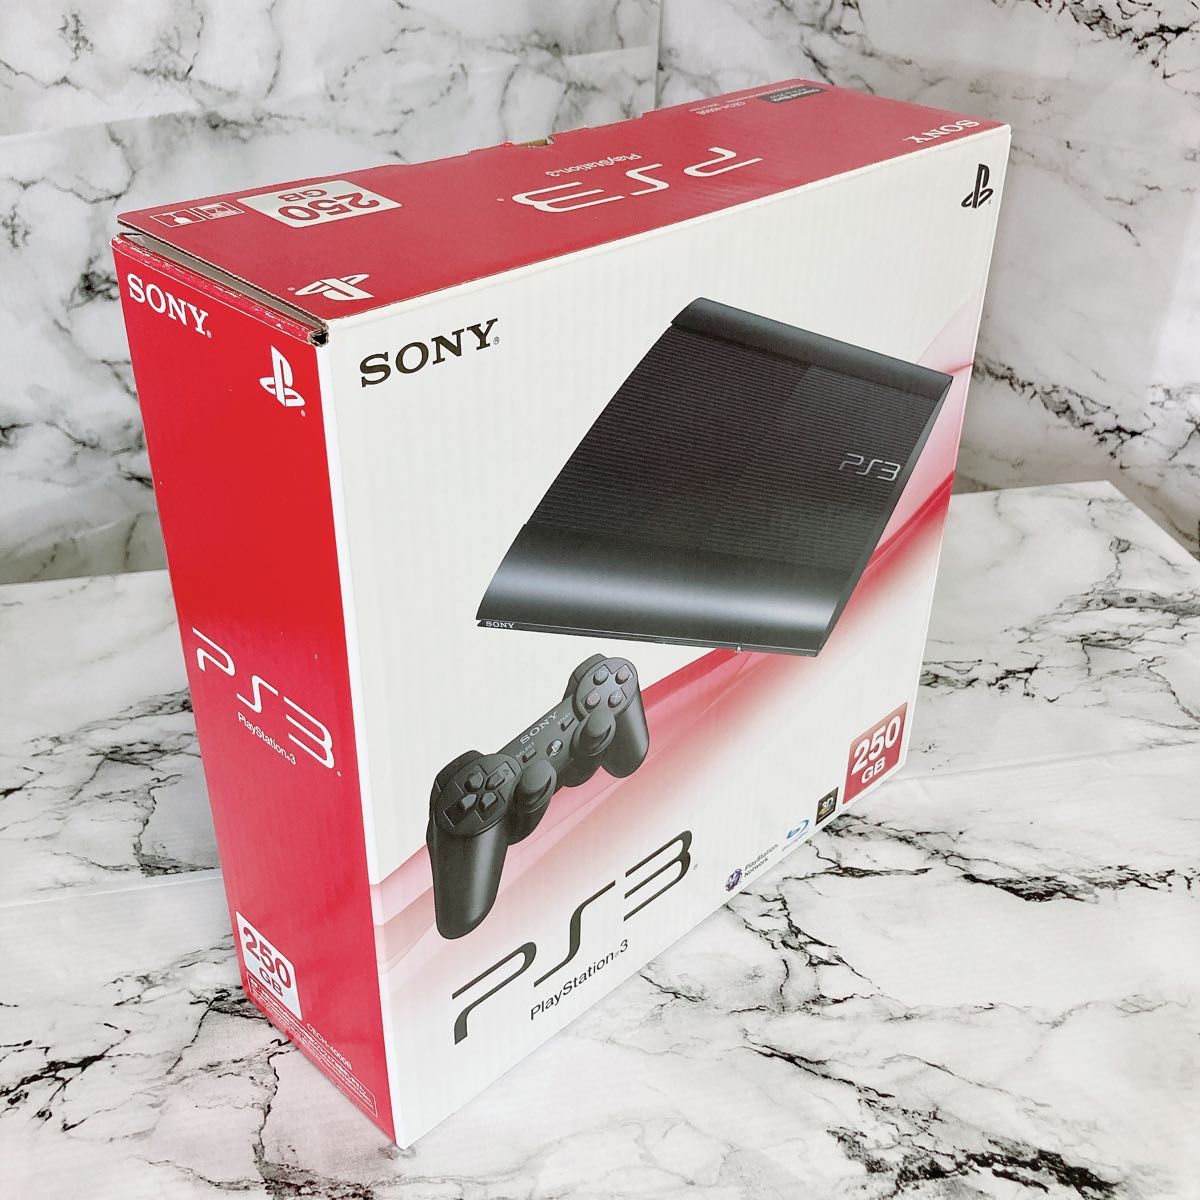 SONY PlayStation3 CECH-4000B 250GB 完品